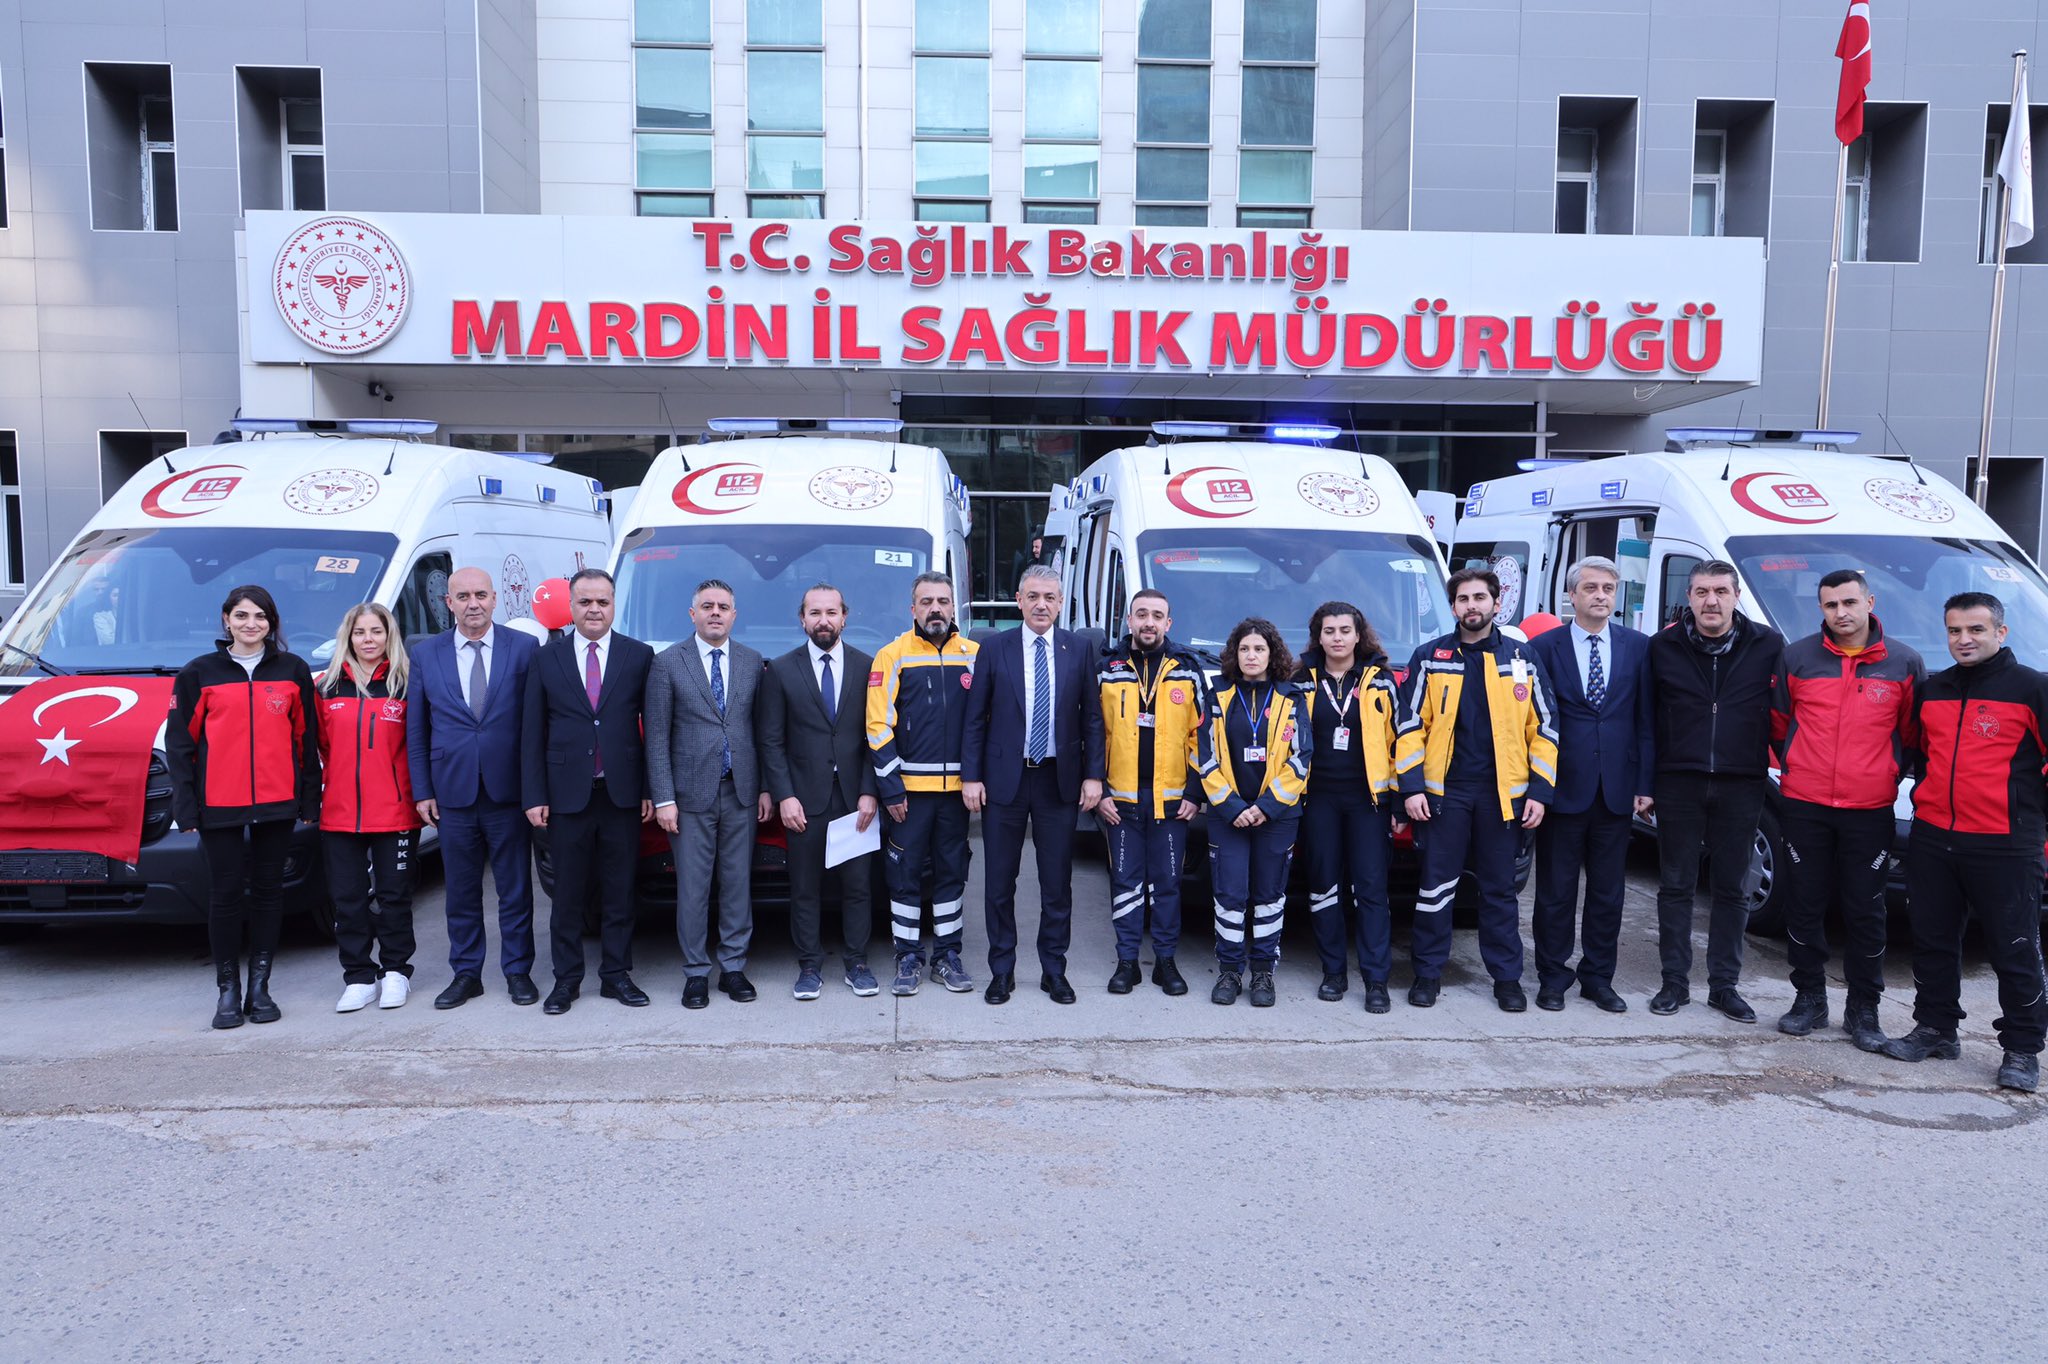 Mardin’de yeni ambulanslar hizmete alındı